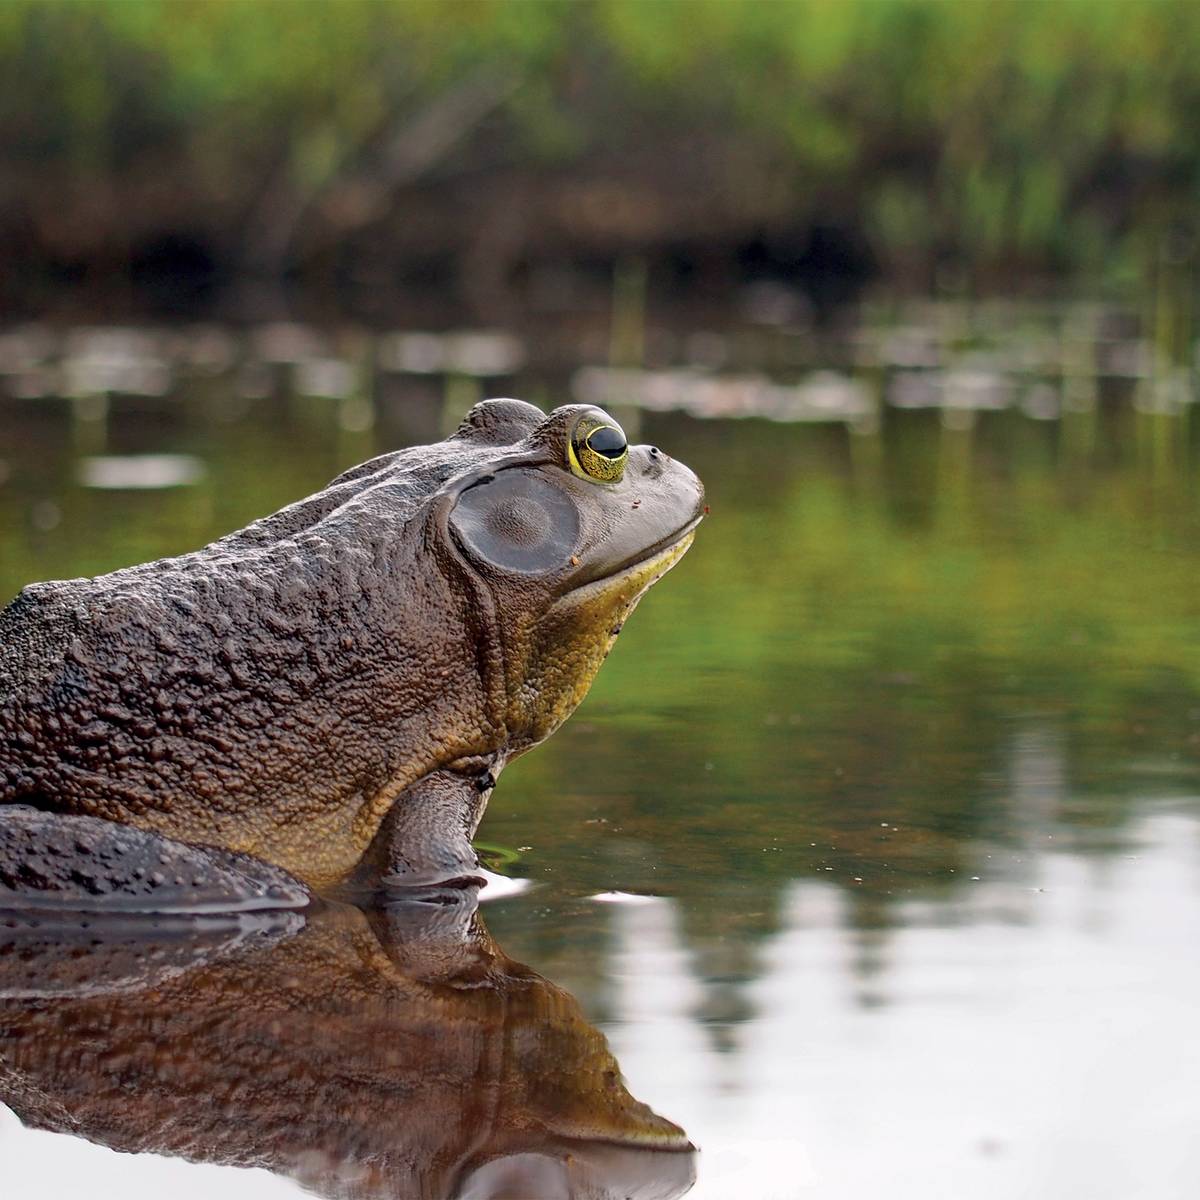 Grenouille sur eau - Lutter contre la grenouille taureau pour préserver les amphibiens de Sologne - Programme France - Association Beauval Nature